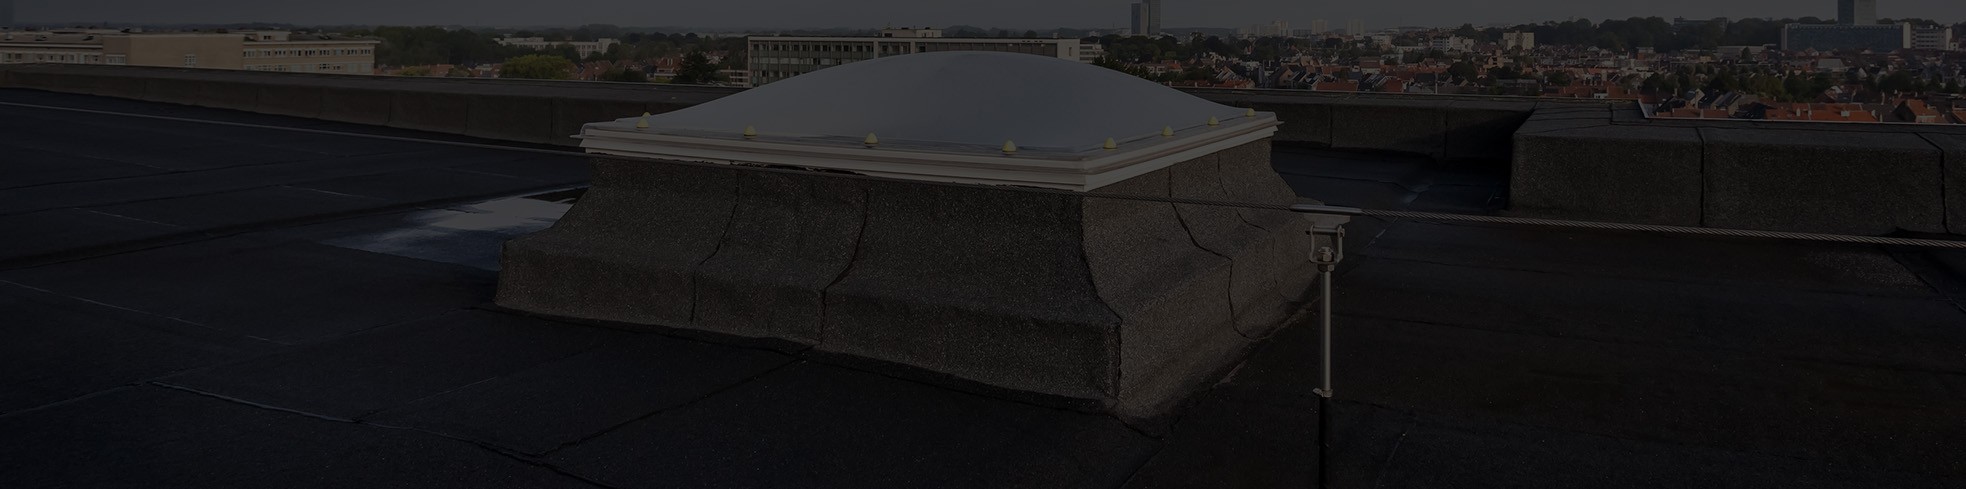 Roof Access Skylight Installation in Milwaukee 